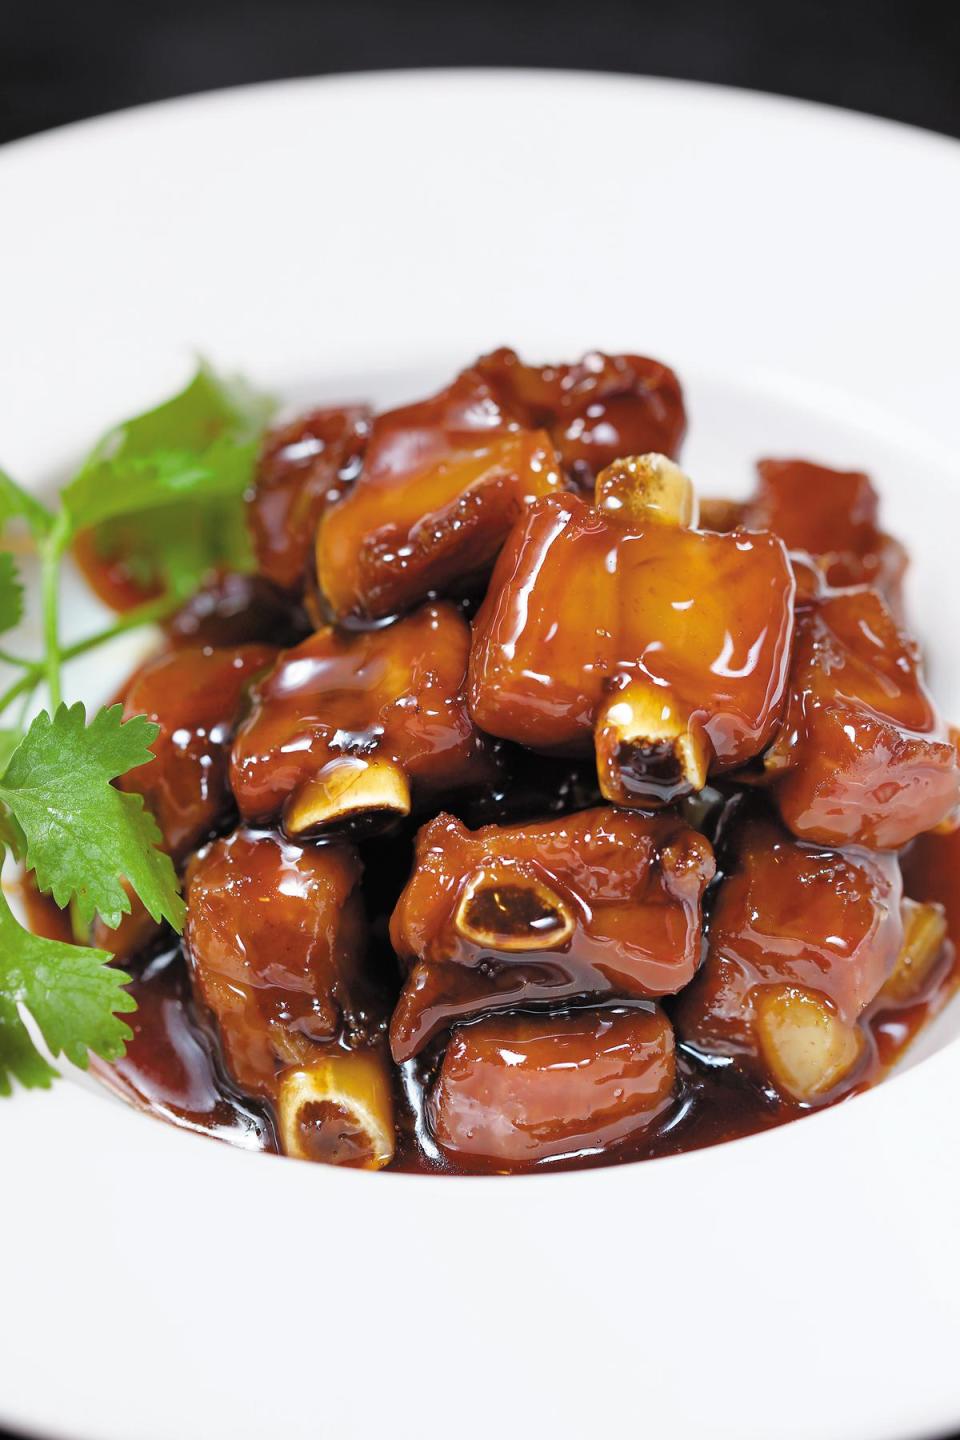 冷菜的「糖醋小排」被蔡瀾形容為甜鹹很有層次。